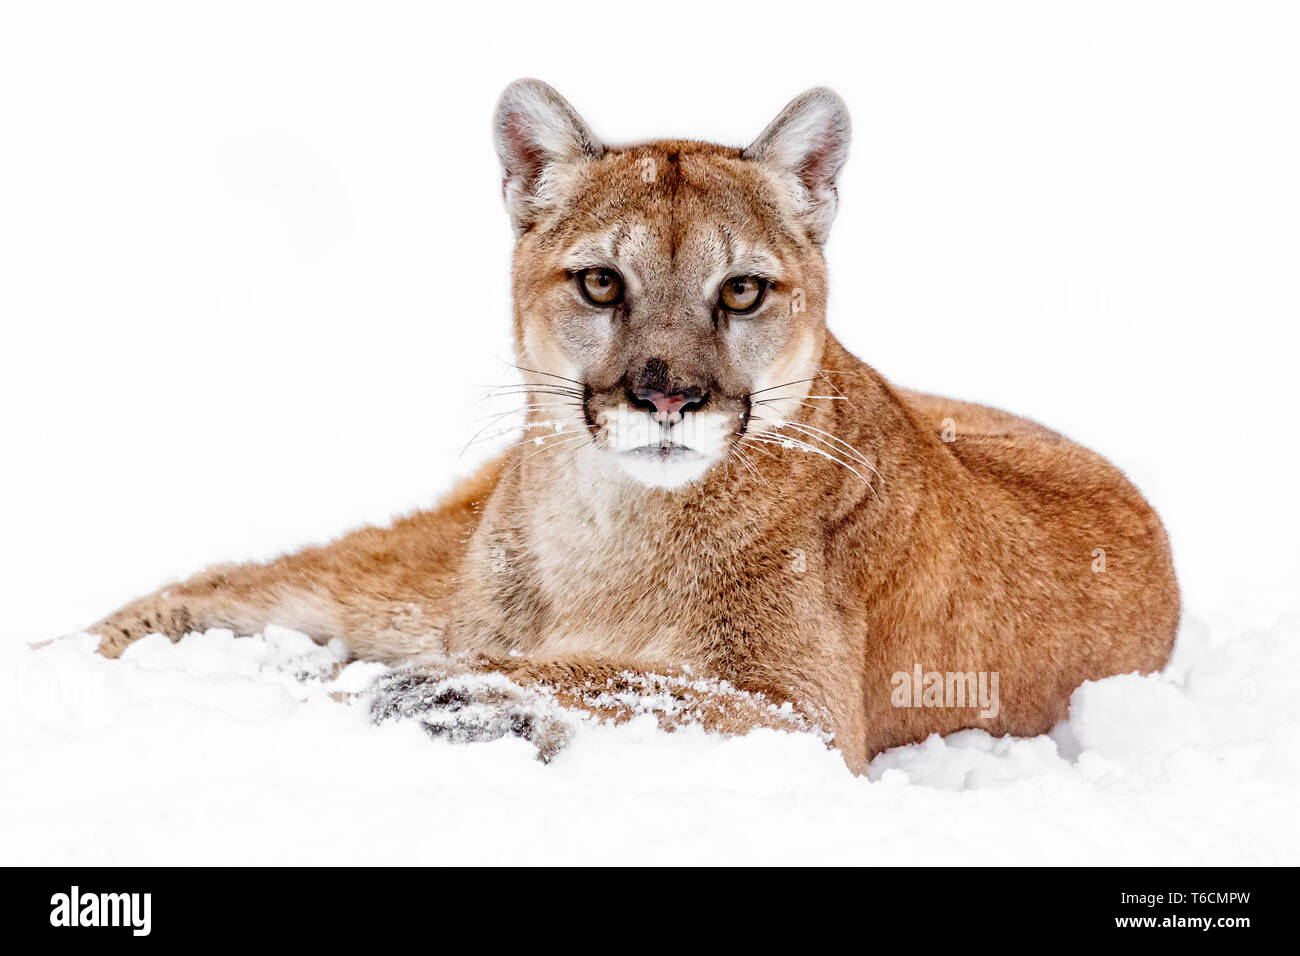 Le cougar va par beaucoup de noms y compris mountain lion, puma, panthère, ou catamount, est un grand chat originaire des Amériques. Banque D'Images